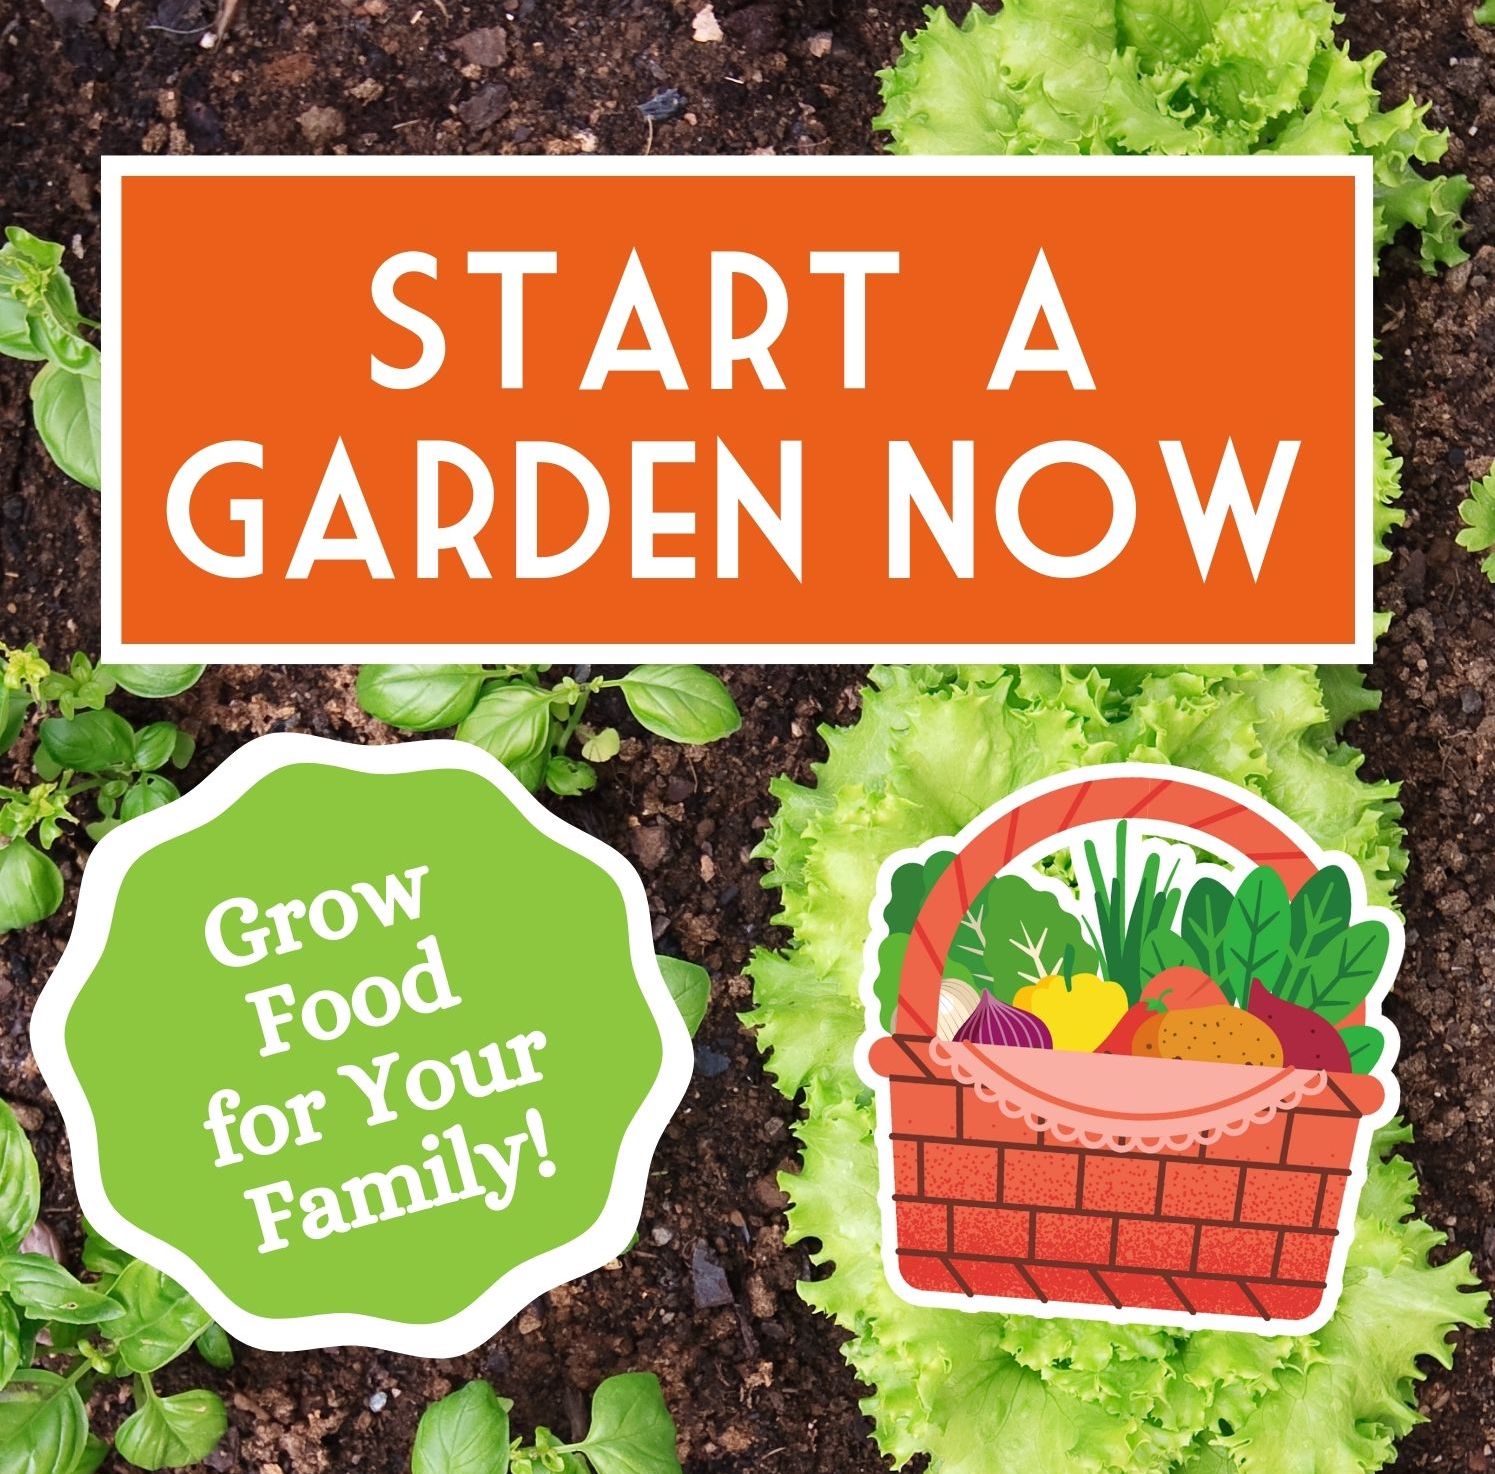 Start a Garden Now!